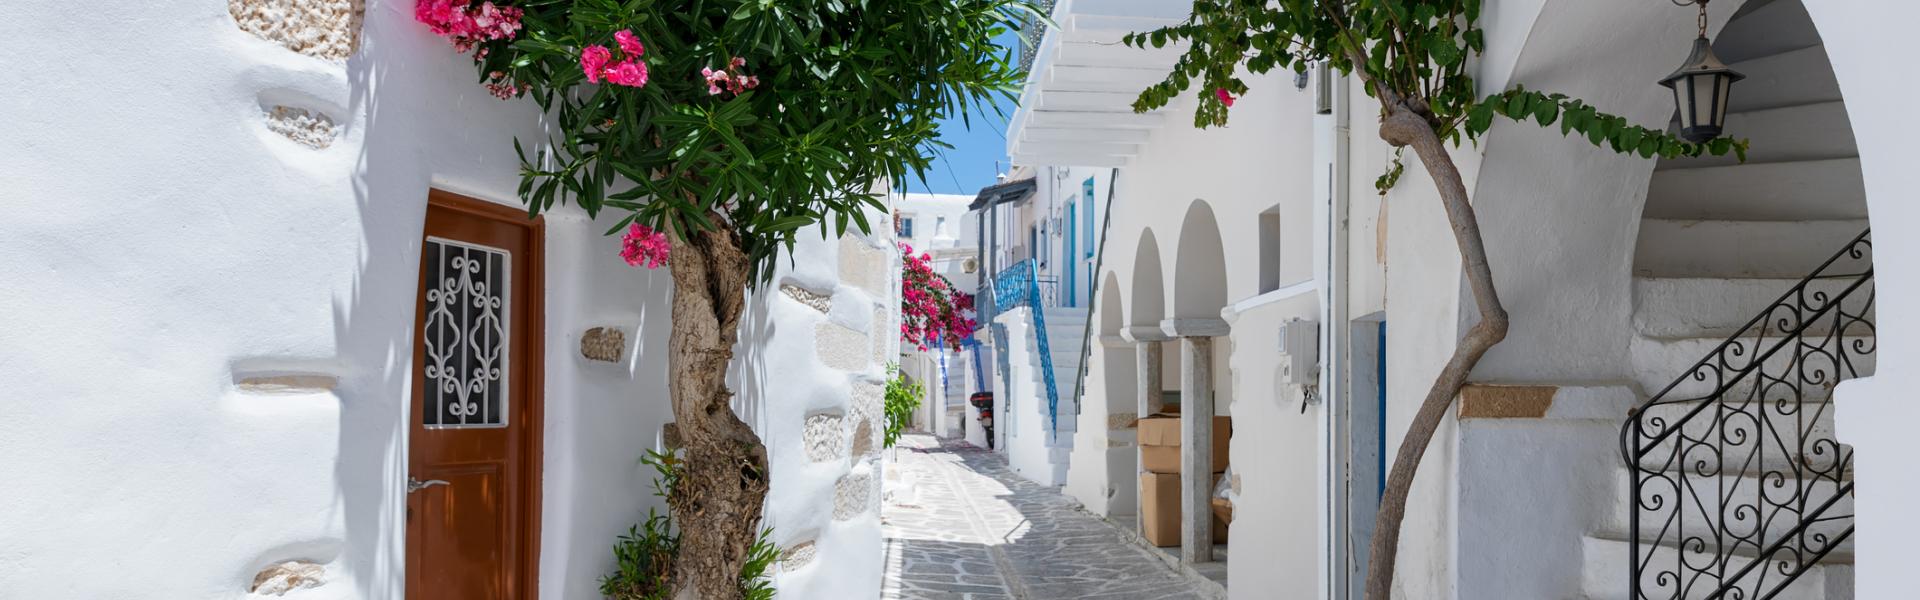 Ferienwohnungen & Ferienhäuser für Urlaub auf Paros - Casamundo